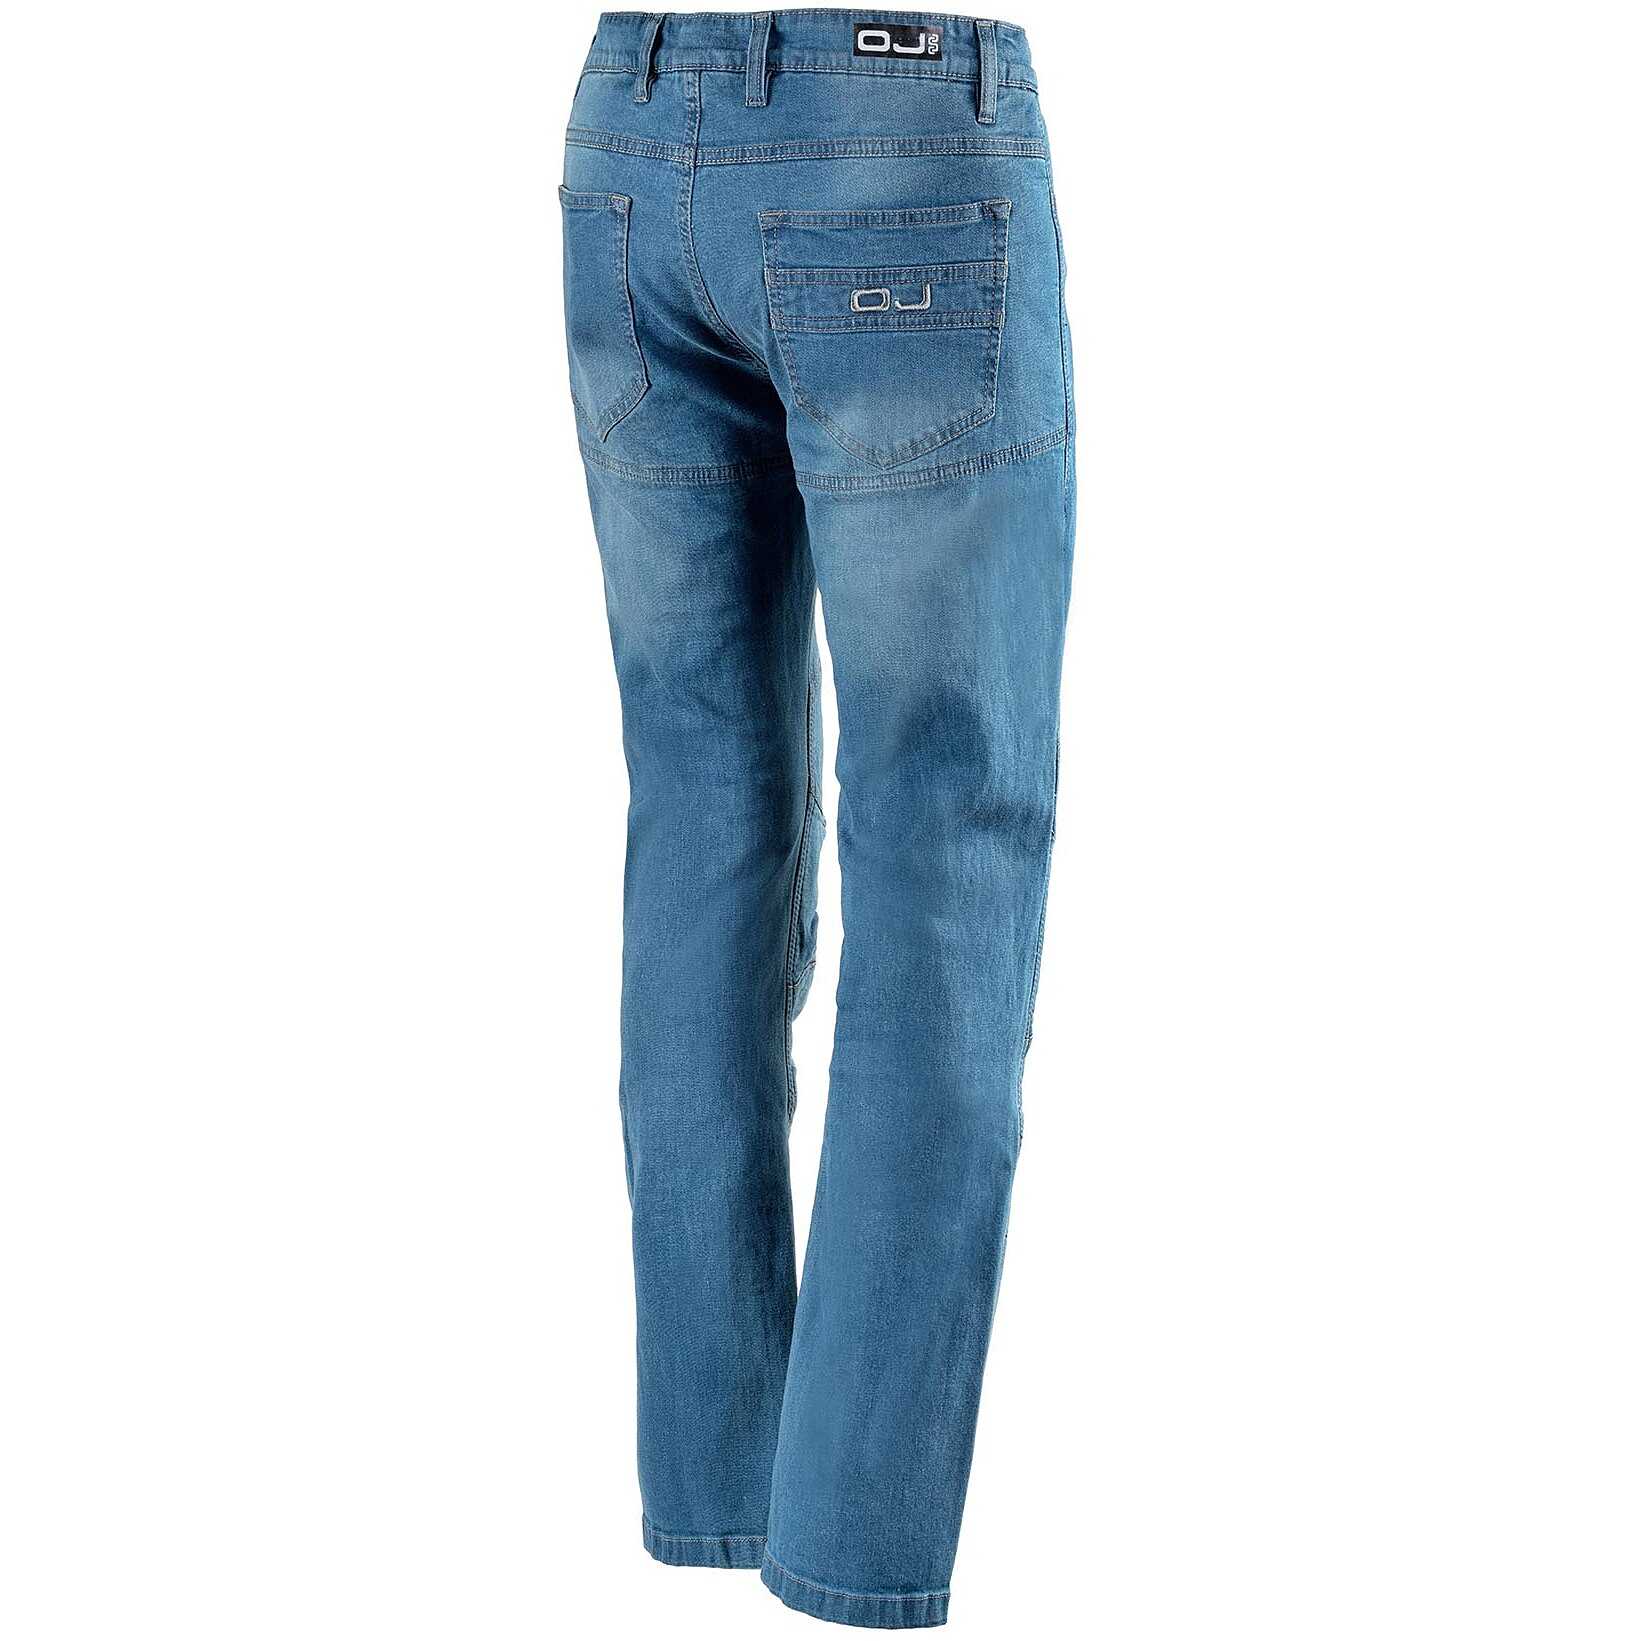 Jeans uomo moto tecnici OJ Storm man blu omologati protezioni impermeabile